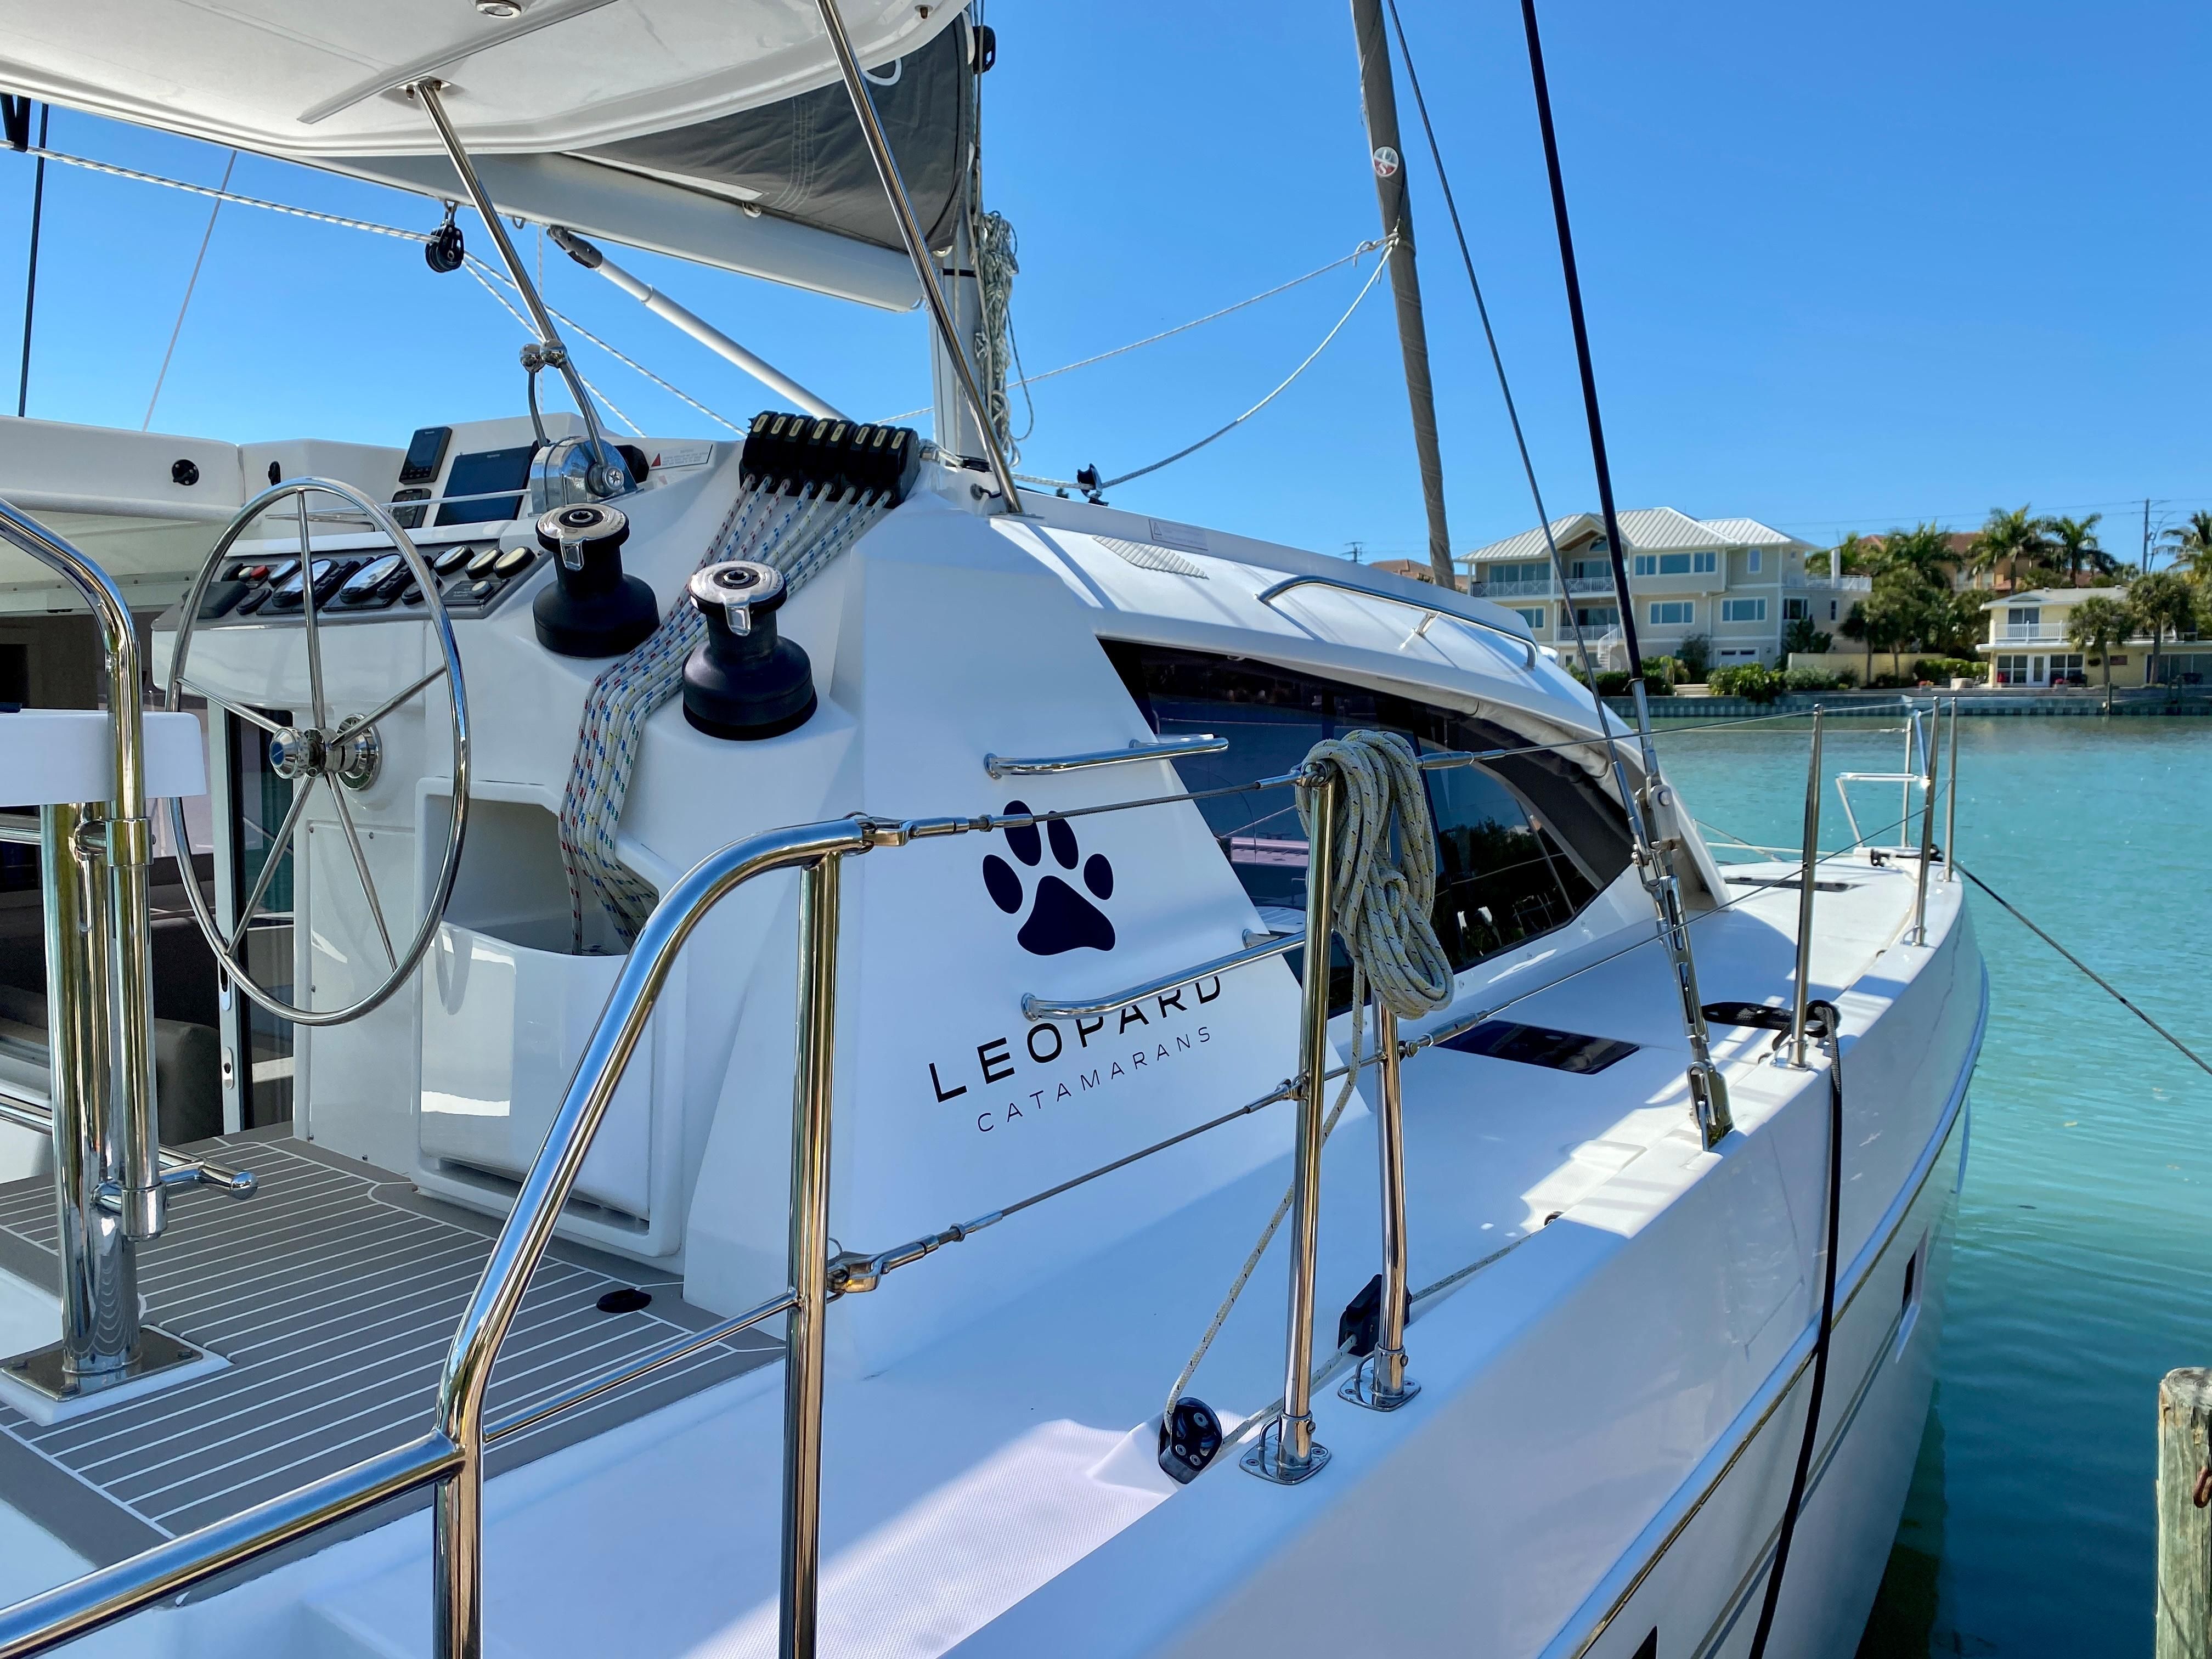 2017 leopard 40 catamaran